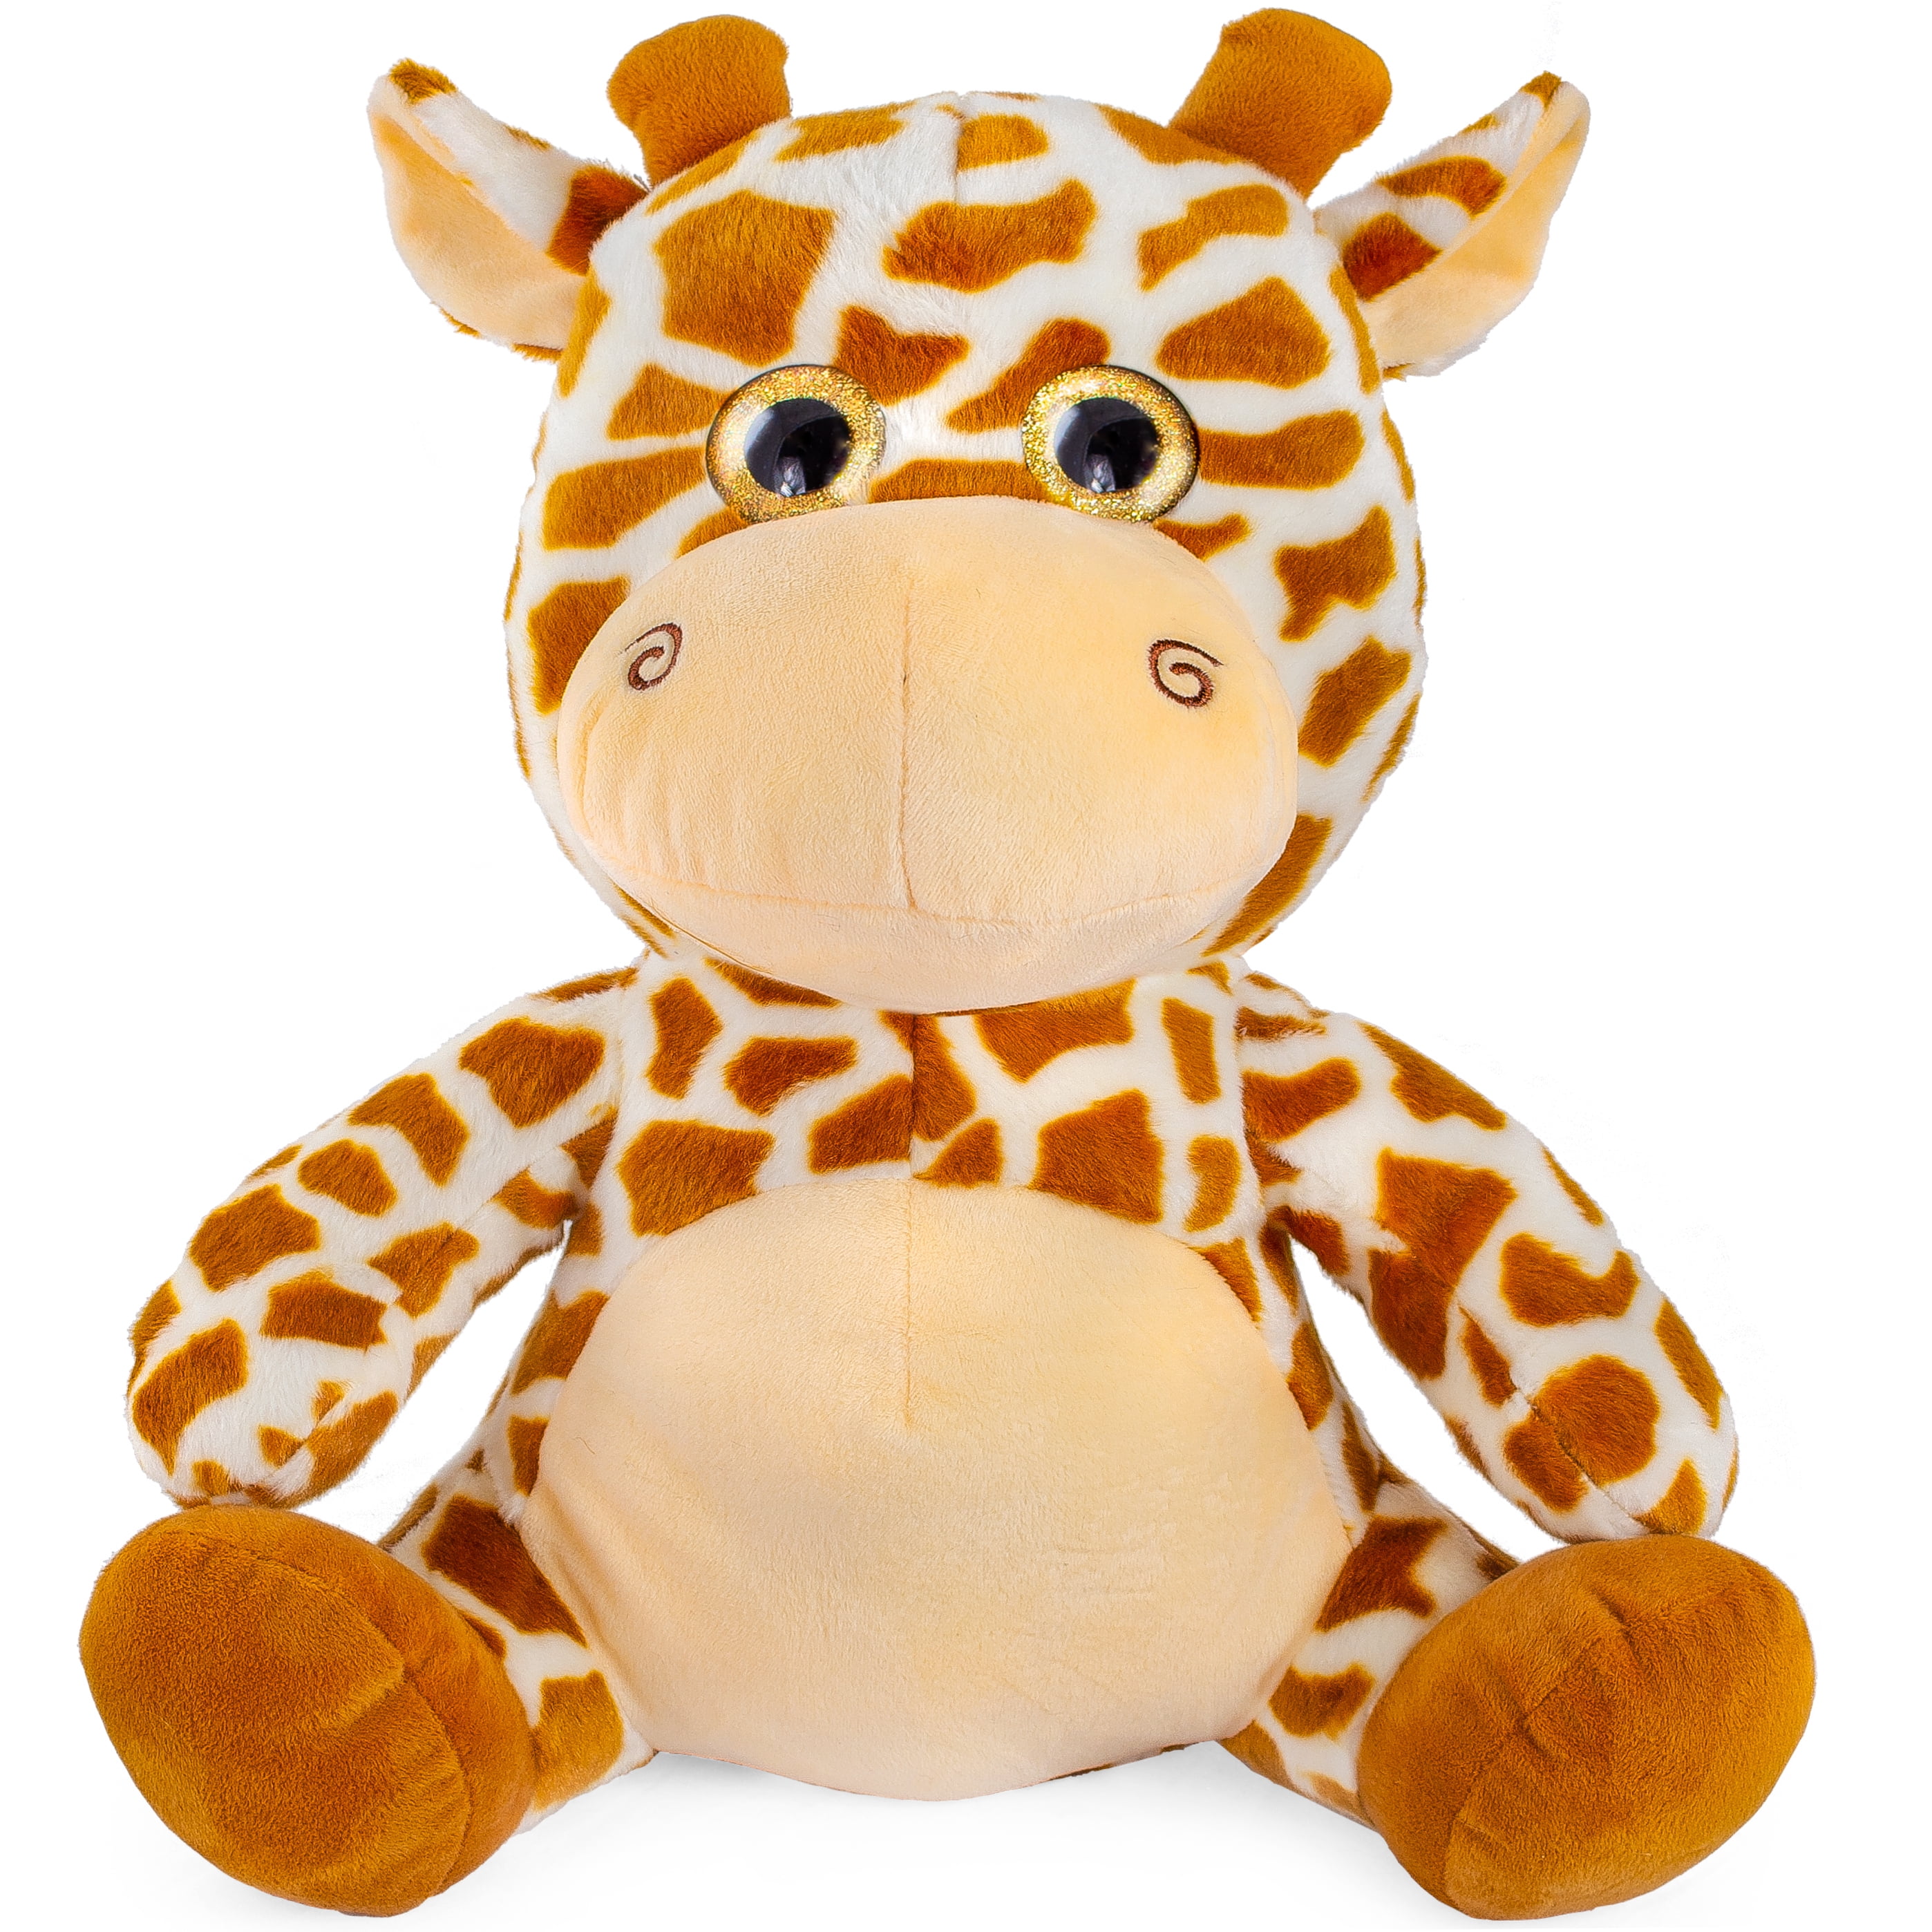 Giant Stuffed Giraffe Soft Big Plush Stuffed Animal Latvia, SAVE 31% -  